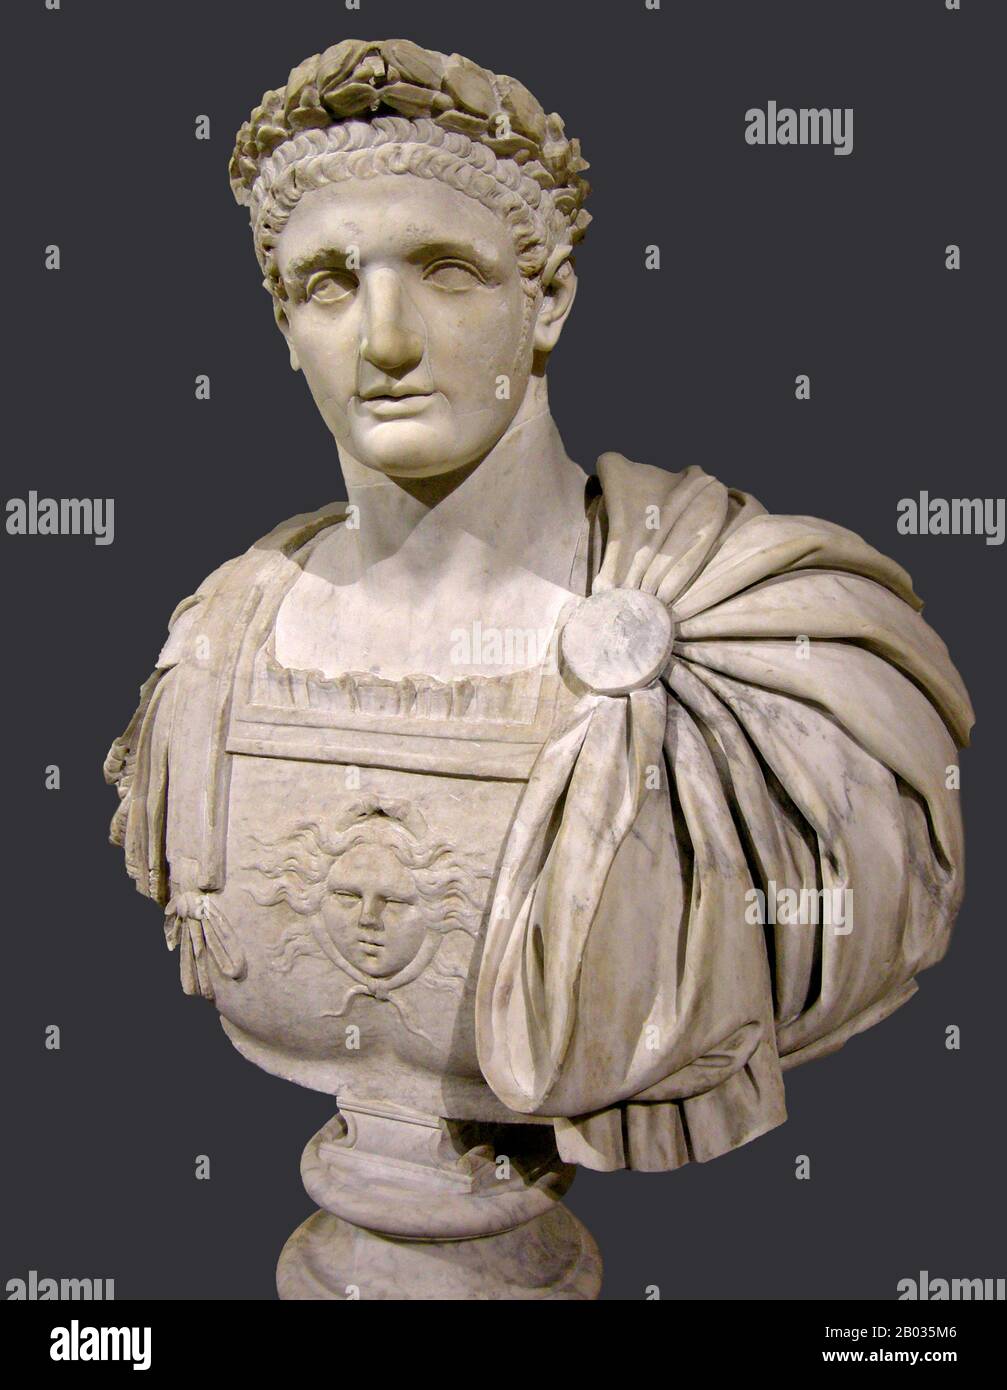 Terzo e ultimo imperatore della diansty flaviano, Domiziano (51-96 d.C.) era il figlio più giovane di Vespasiano e la maggior parte dei suoi giovani fu spesa all'ombra del suo fratello più compiuto Tito, che si guadagnò il suo renown durante La Prima guerra ebraico-romana. Quando suo padre divenne imperatore alla fine dell'anno Dei Quattro imperatori nel 69 d.C., a Tito furono assegnati molti uffici, mentre Domiziano deteneva onori ma non responsabilità. Questo sarebbe andato avanti per molti anni, fino a quando suo fratello, succeduto a suo padre nel 79 d.C., egli stesso morì inaspettatamente da malattia nel 81 d.C. Domiziano fu improvvisamente dichiarato imperatore dal Pr Foto Stock